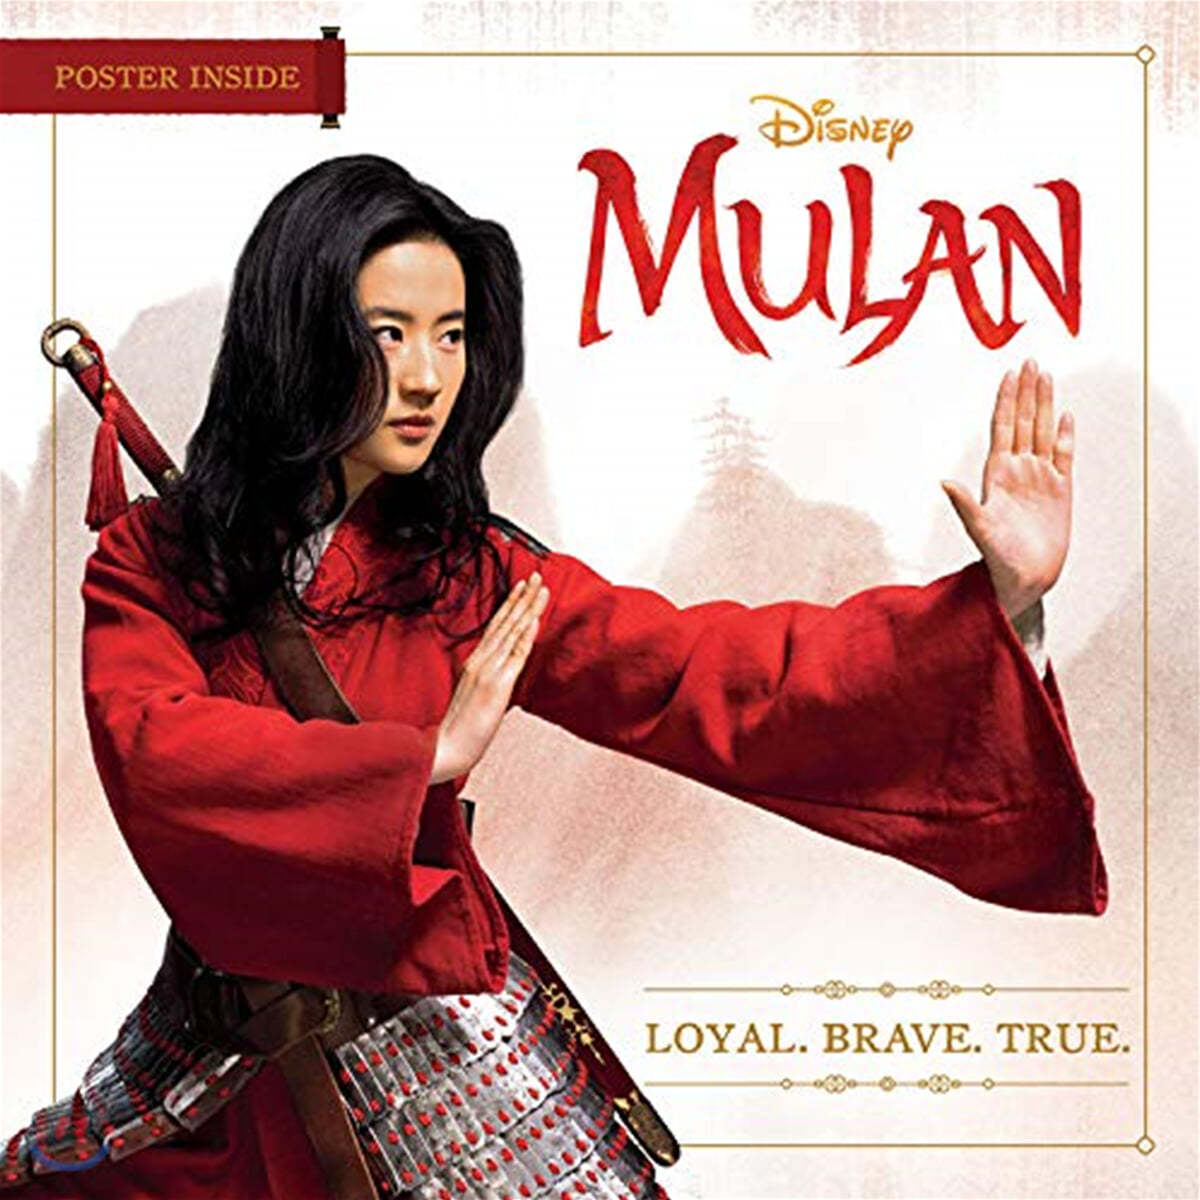 Mulan : Loyal. Brave. True.